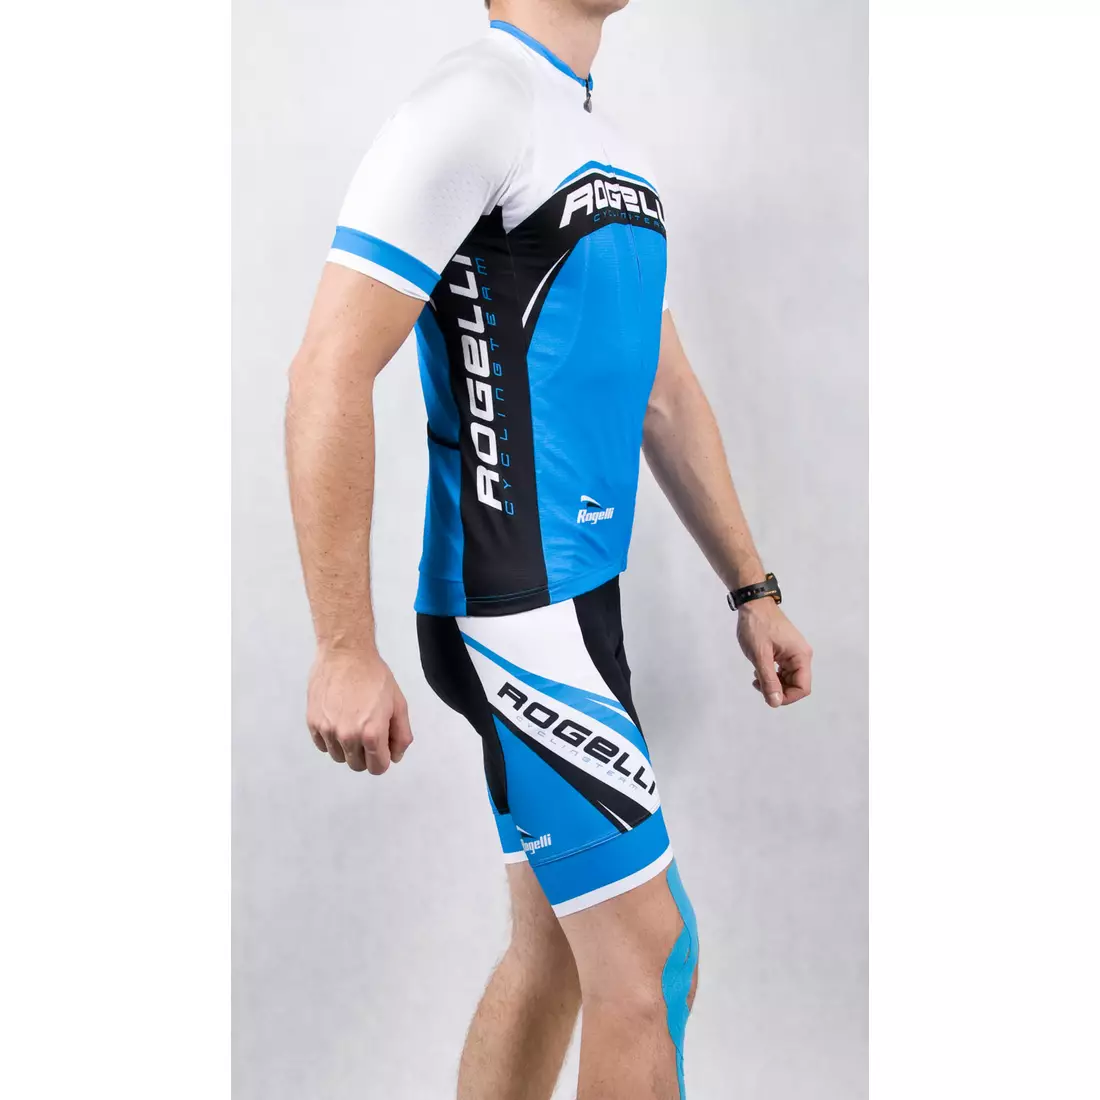 ROGELLI ANCONA - pánsky cyklistický dres, bielo-modrý